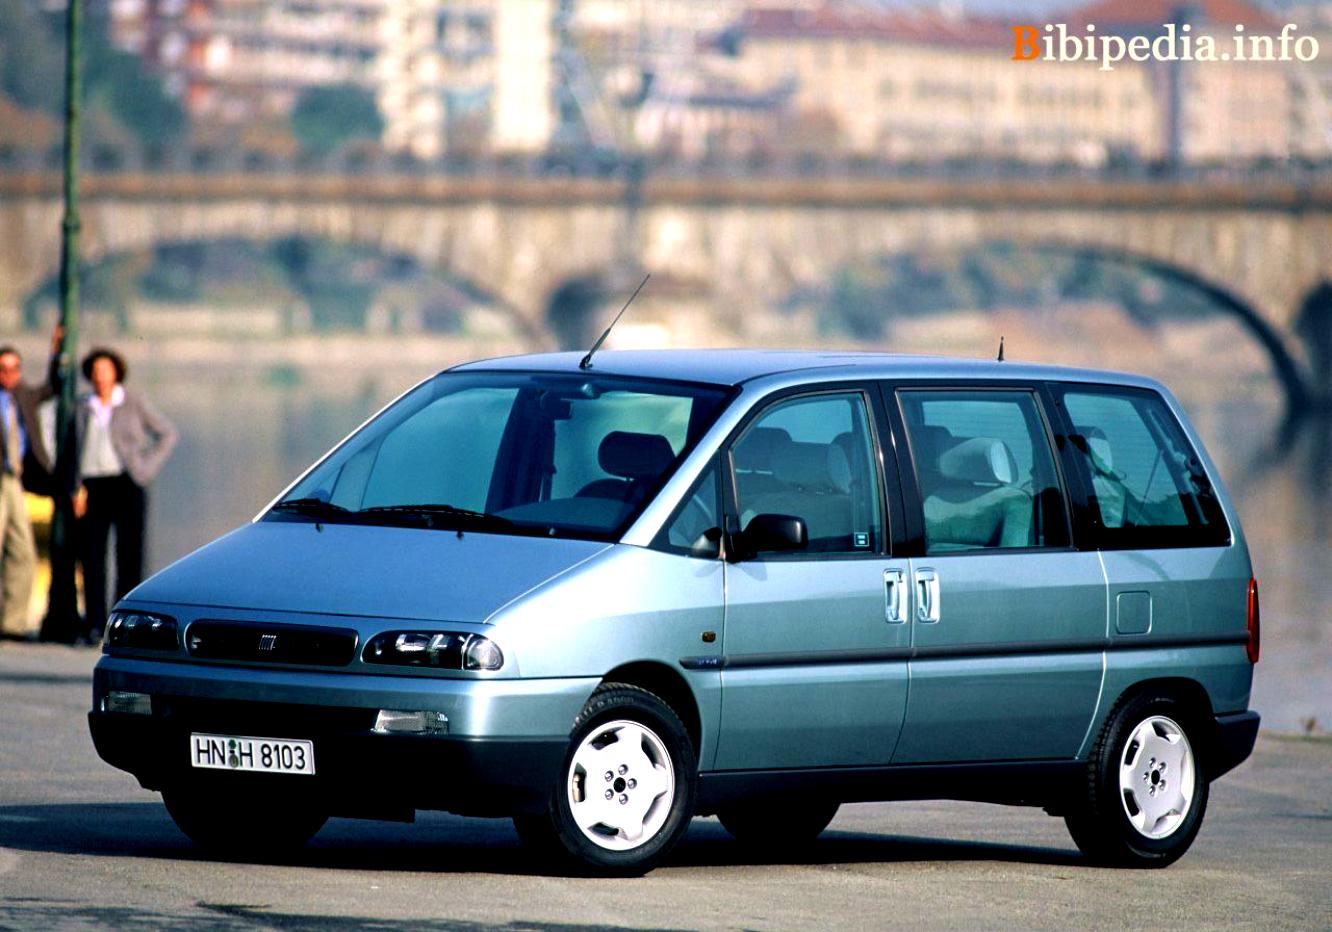 Fiat Ulysse 1999 #1